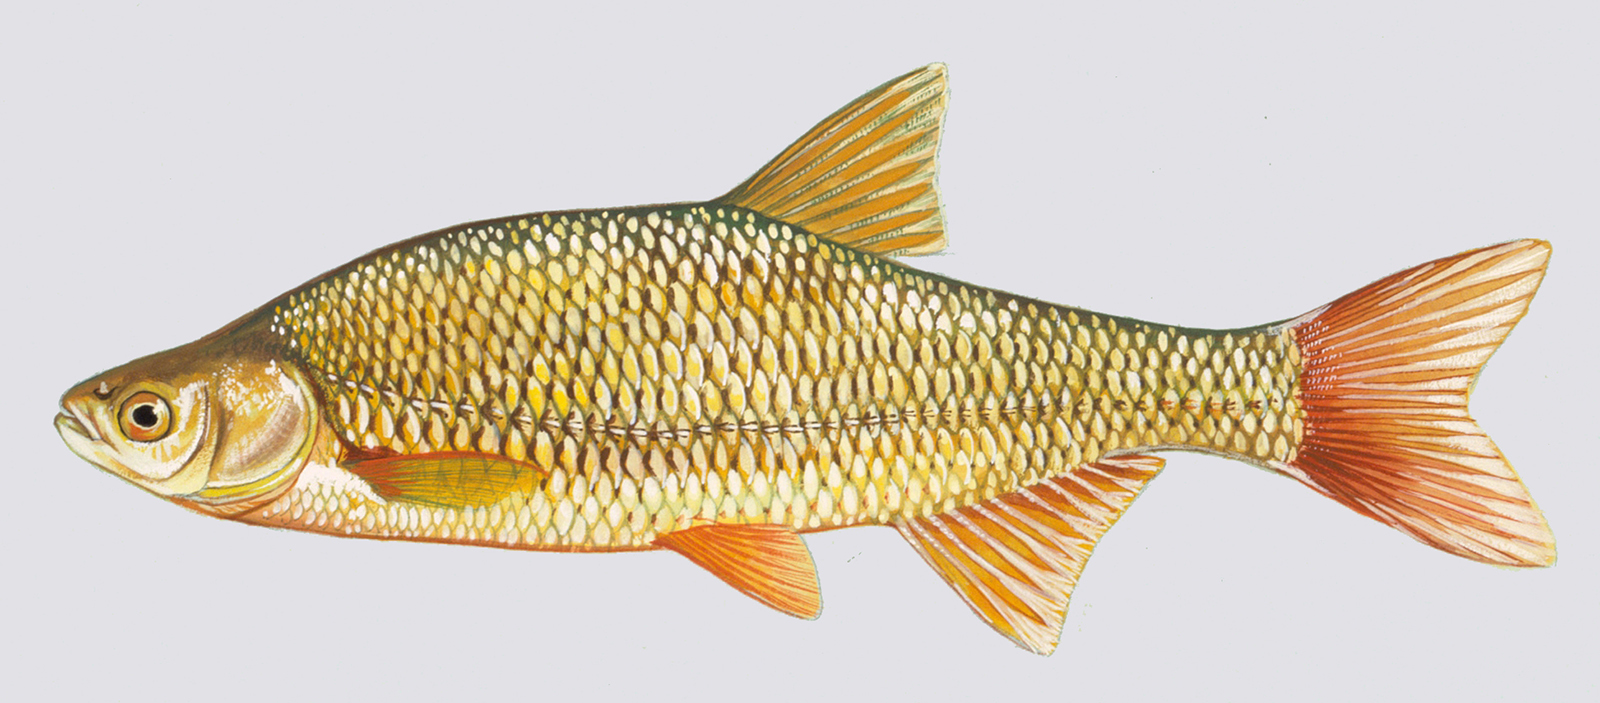 Golden Pond Shiners, Jumbo Golden Shiners For Fishing, Golden Pond